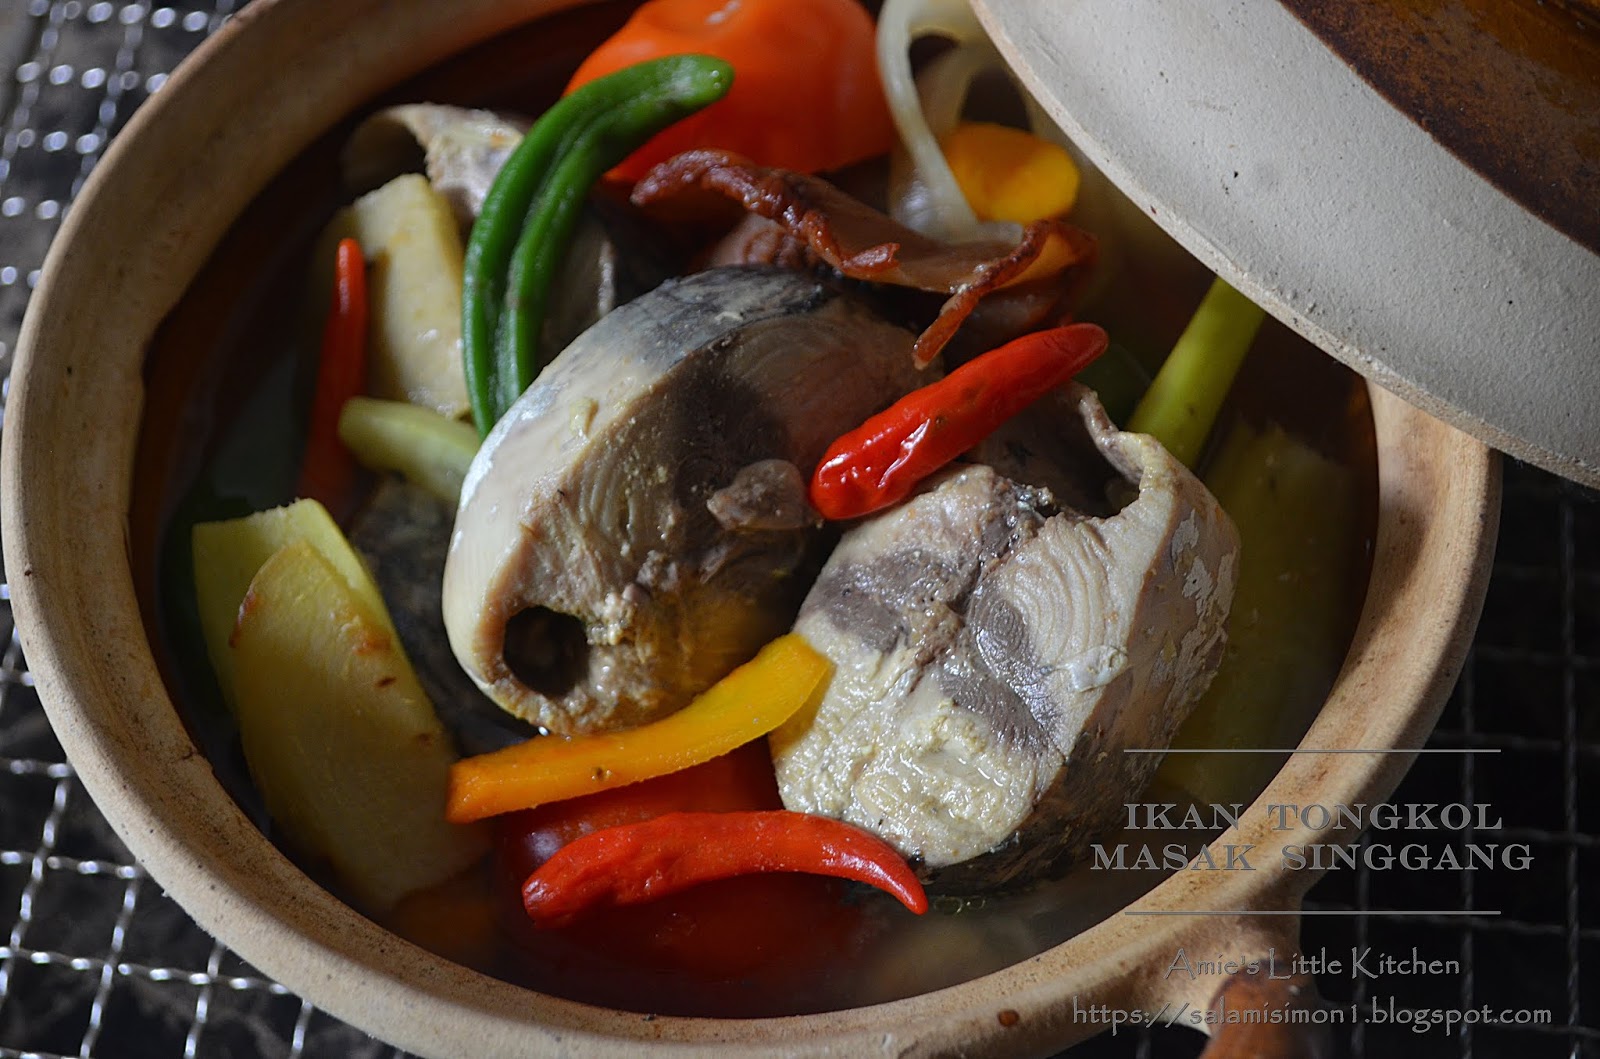 Ikan Tongkol Masak Singgang - Amie's Little Kitchen